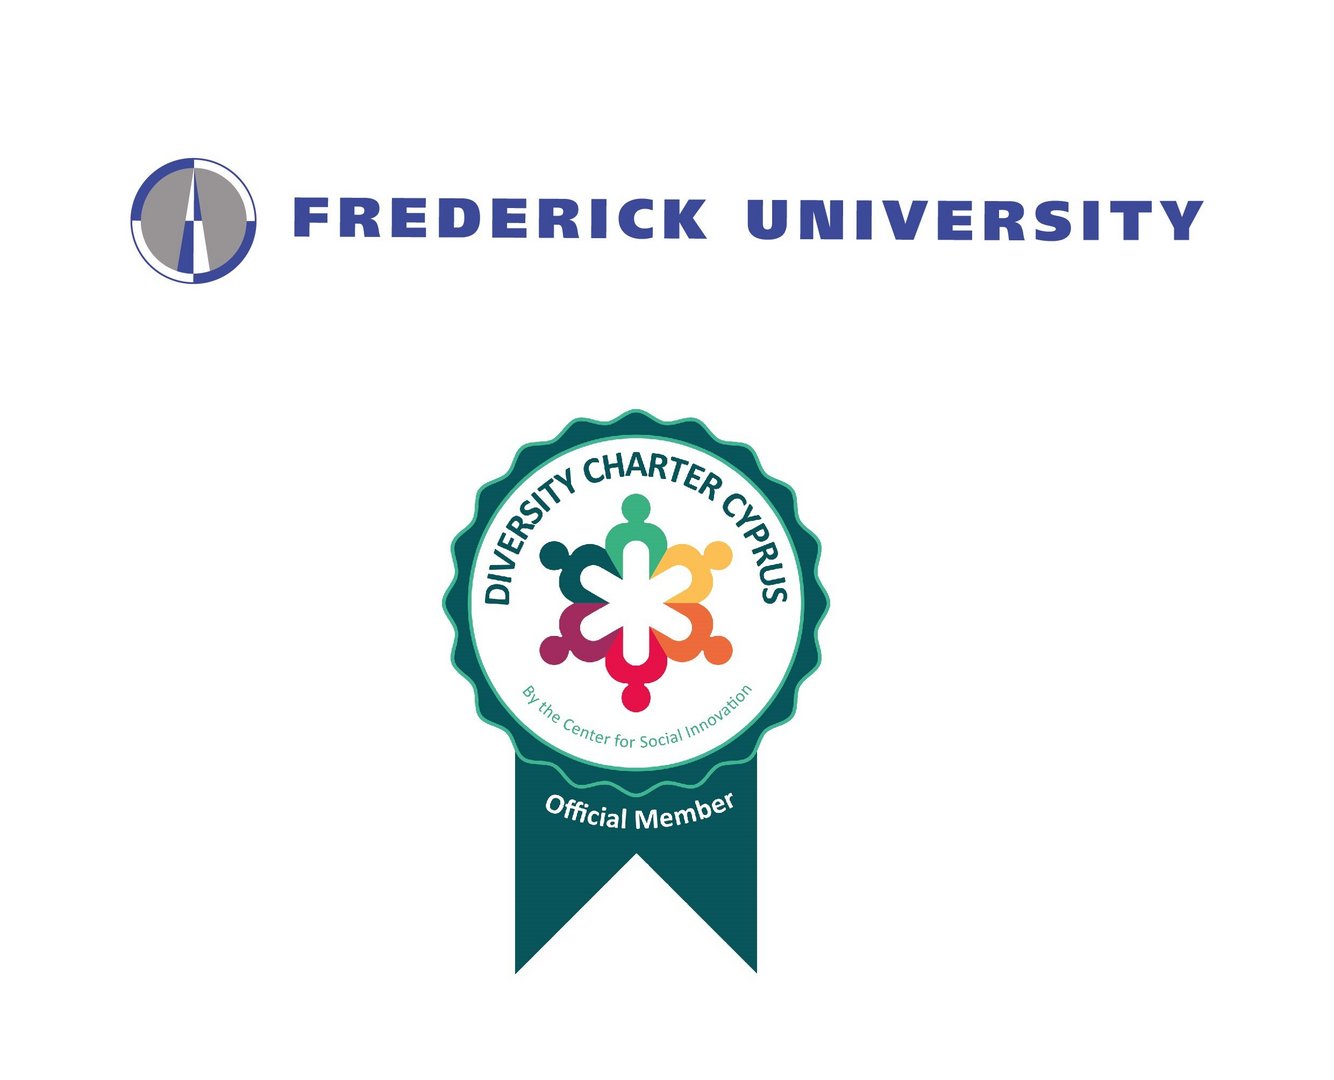 Το Πανεπιστήμιο του Φρέντερικ υπογράφει έναν χάρτη ποικιλομορφίας